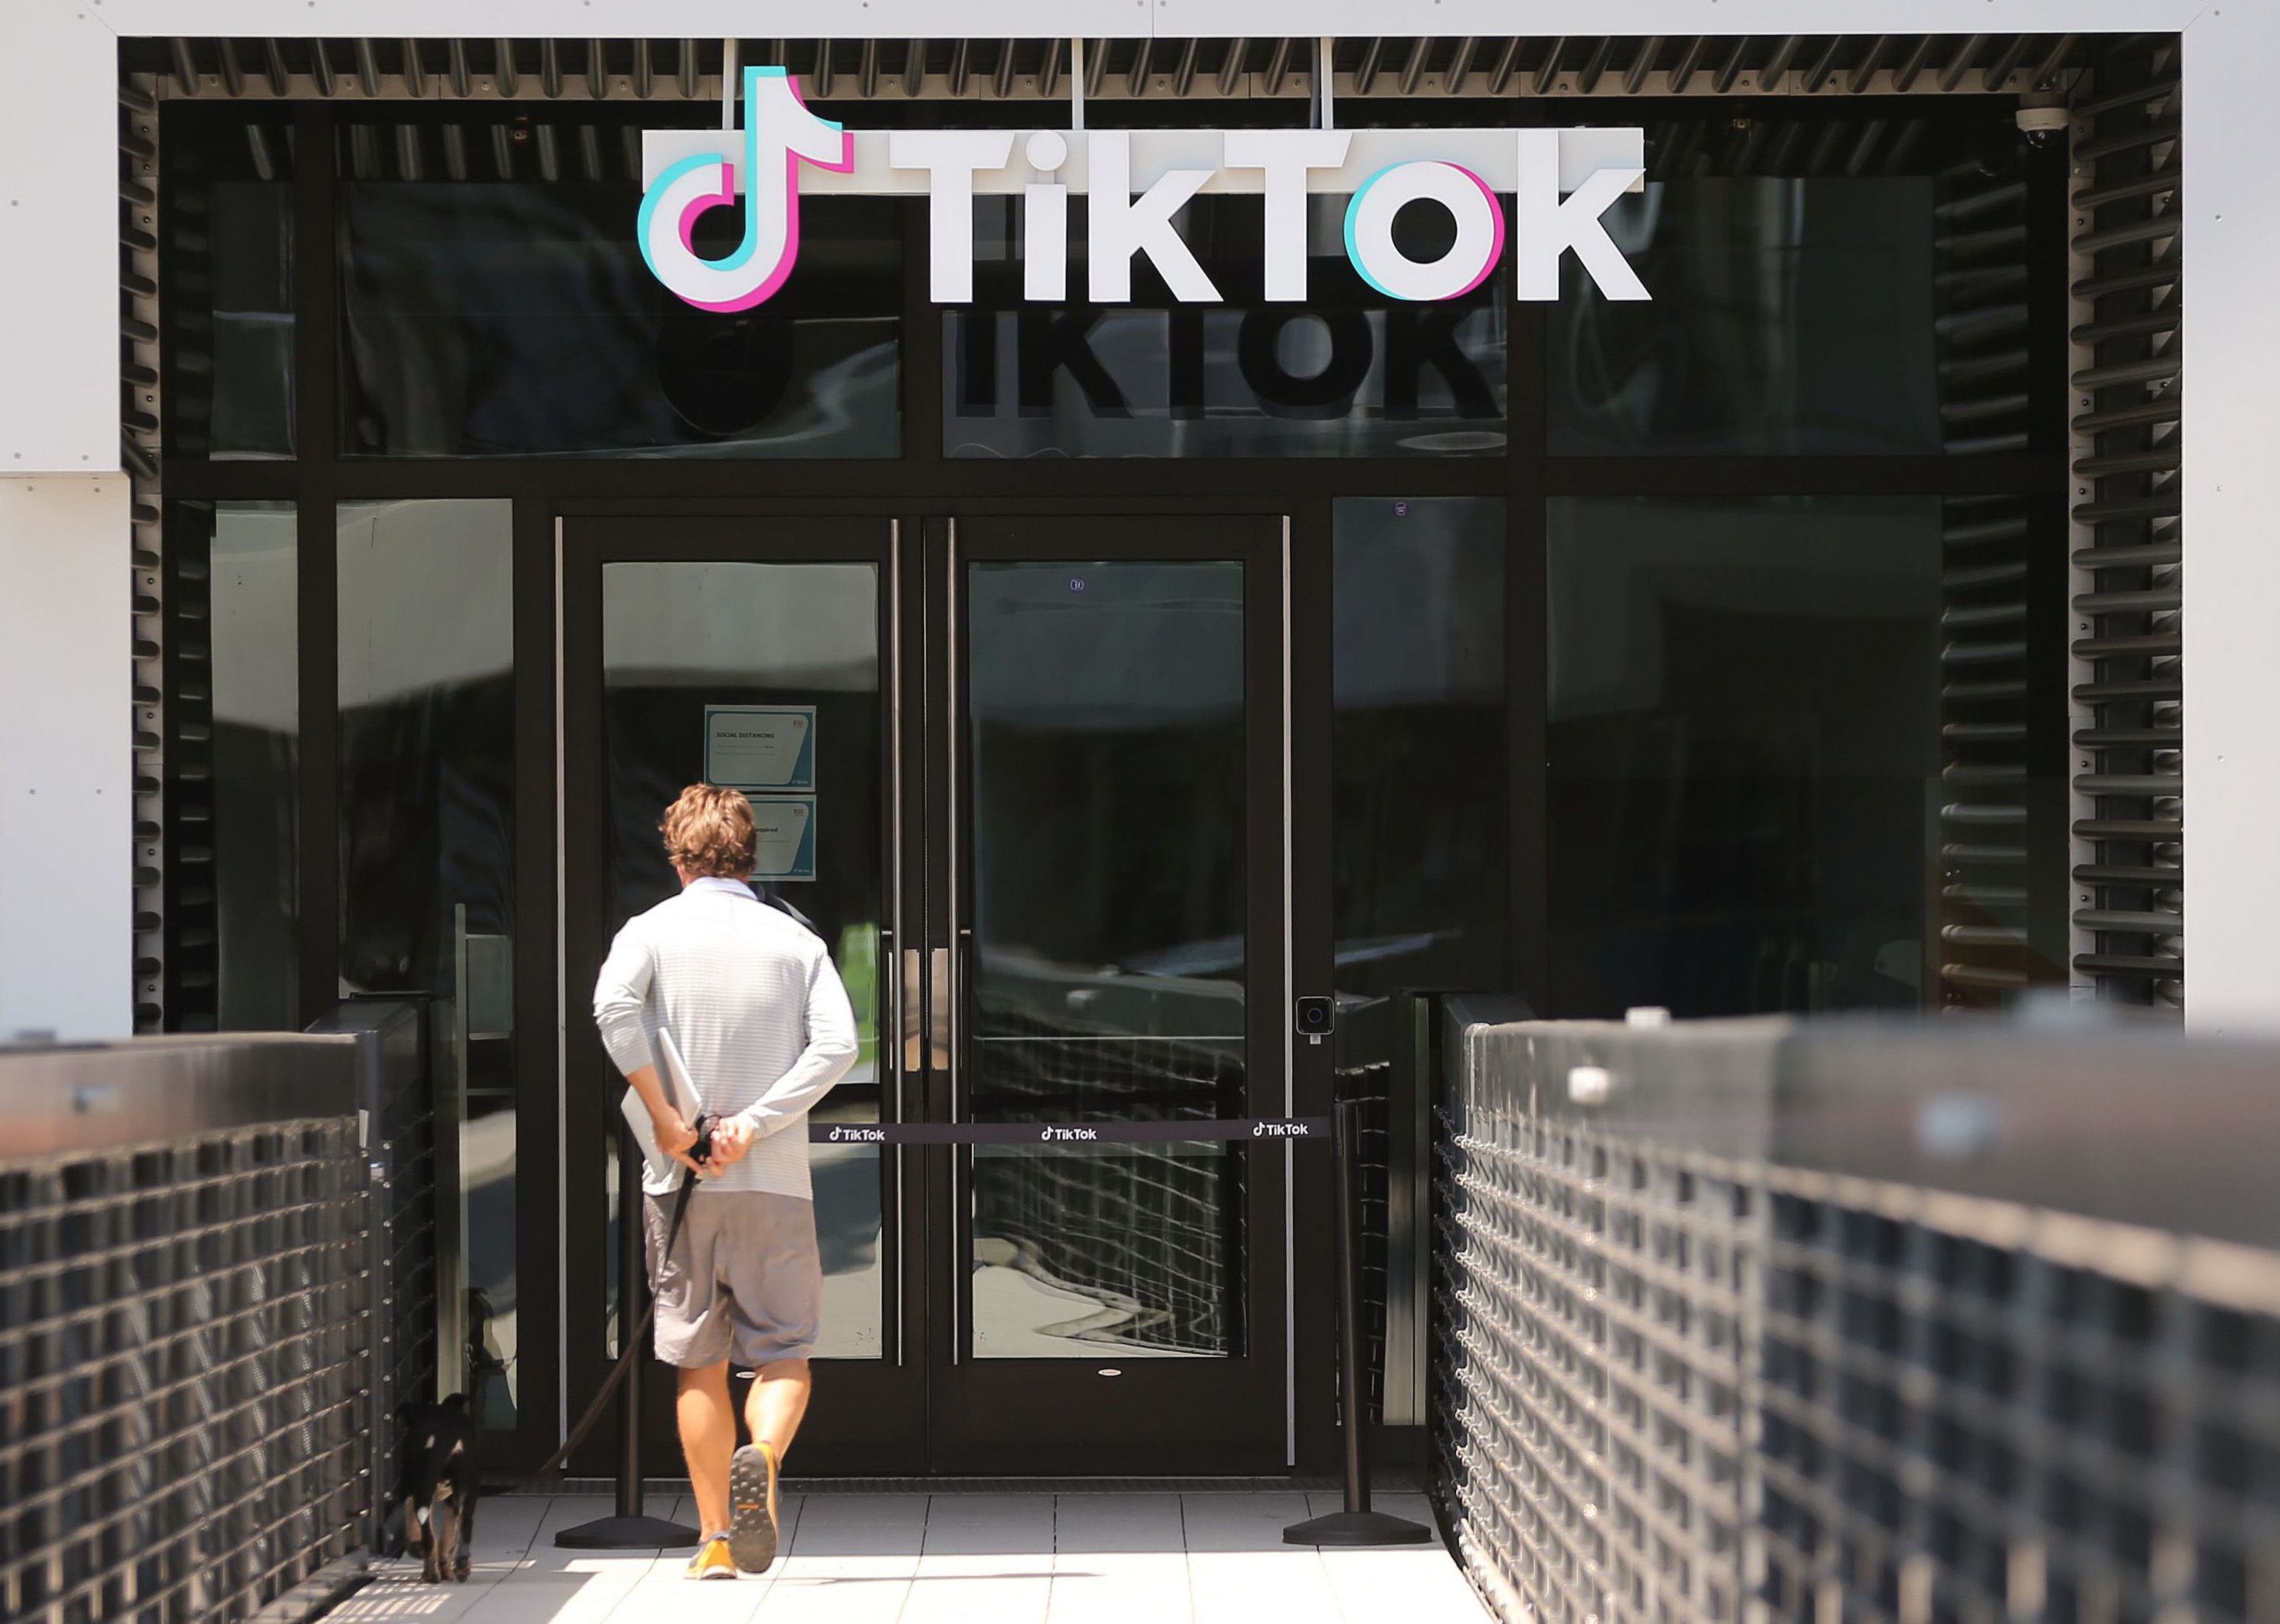 Si treballes a la Comissió Europea, res de TikTok al teu telèfon corporatiu